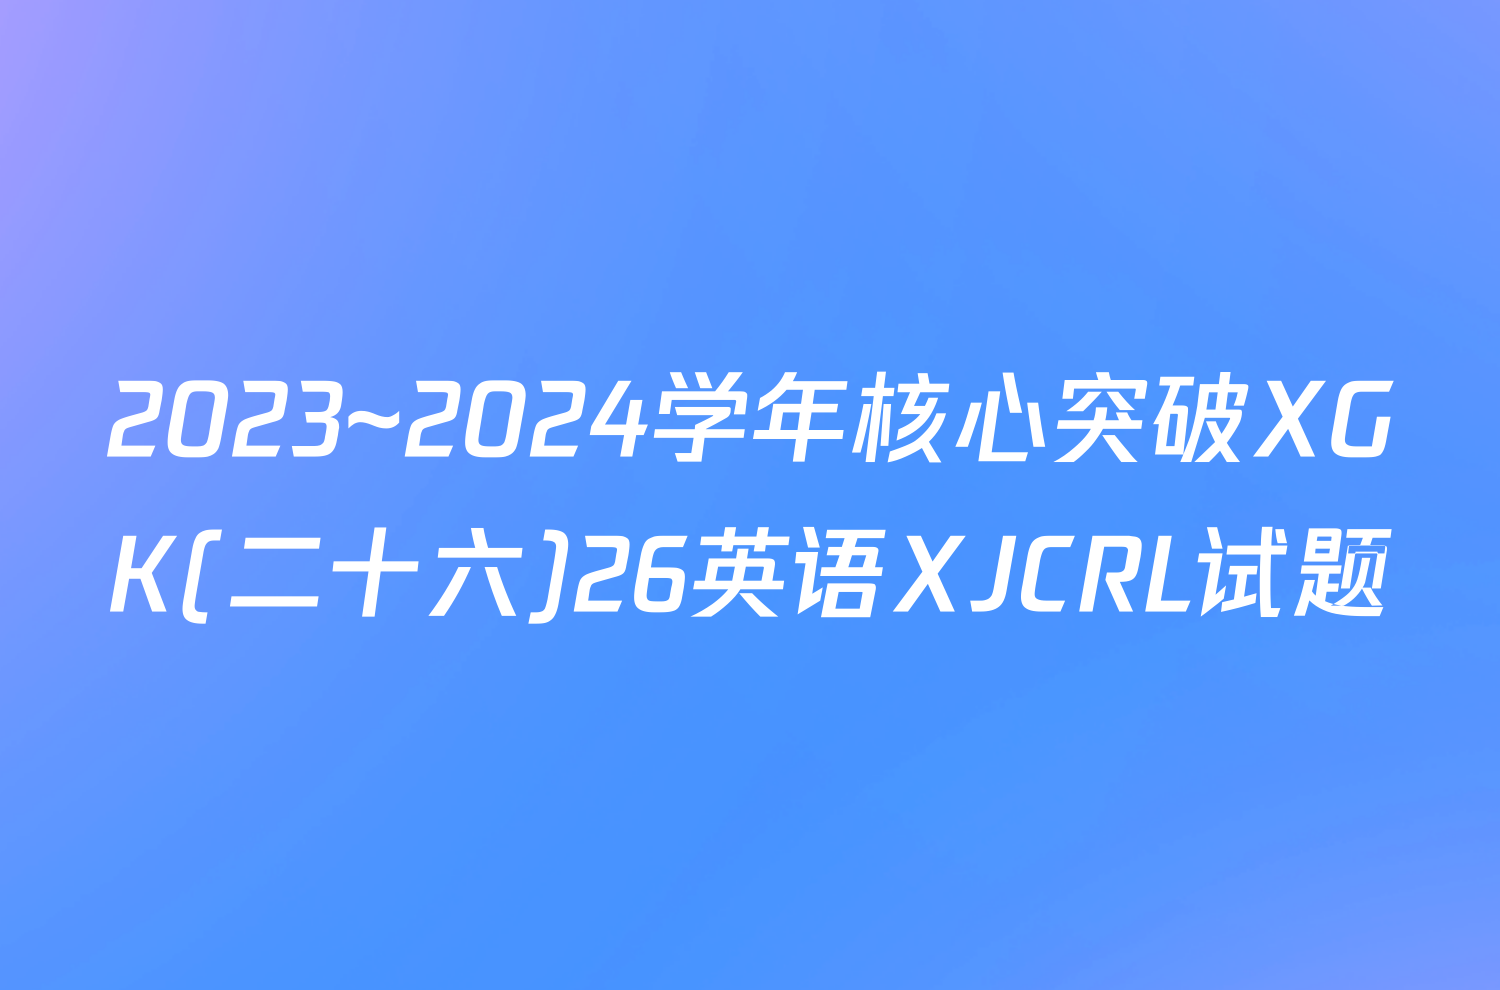 2023~2024学年核心突破XGK(二十六)26英语XJCRL试题